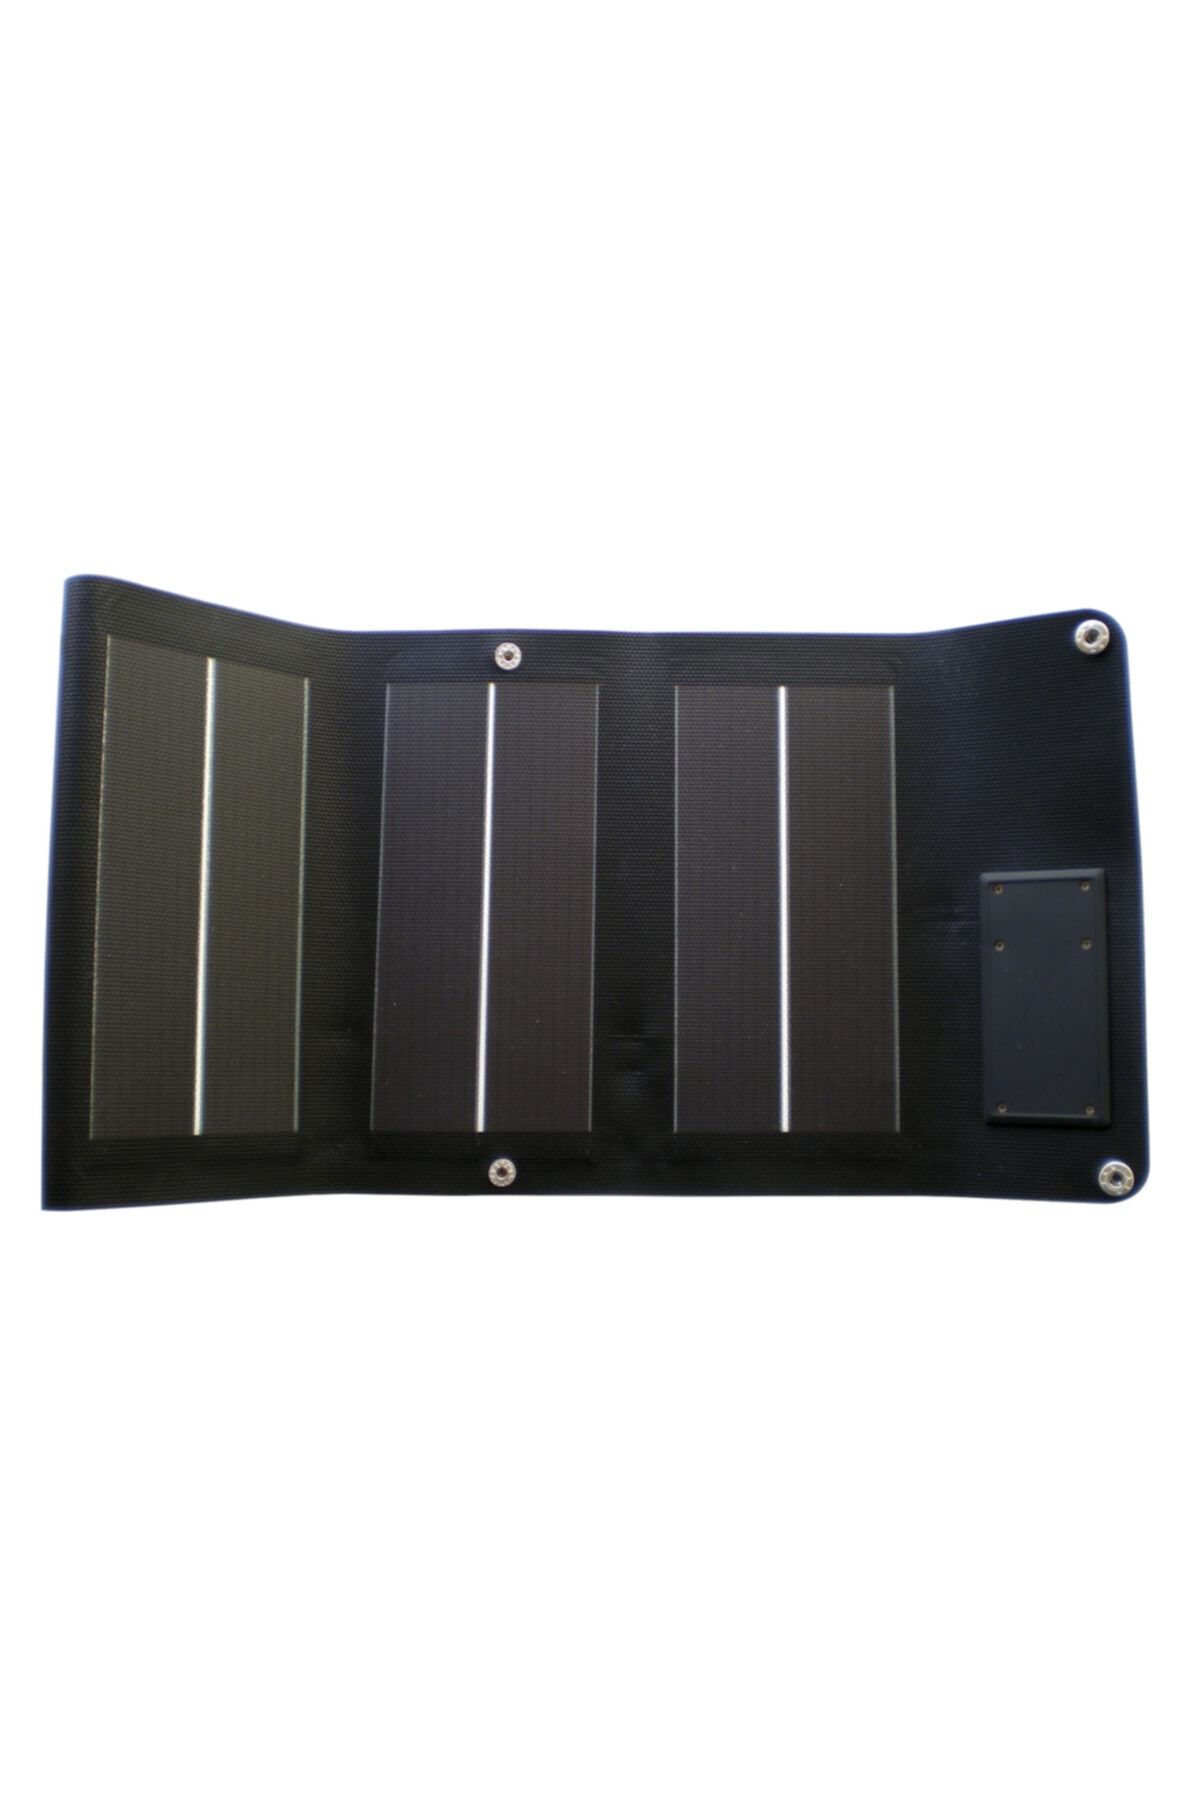 TRANSMER Taşınabilir / Katlanabilir Güneş Enerji Paneli 1.5w – 5v – 500a